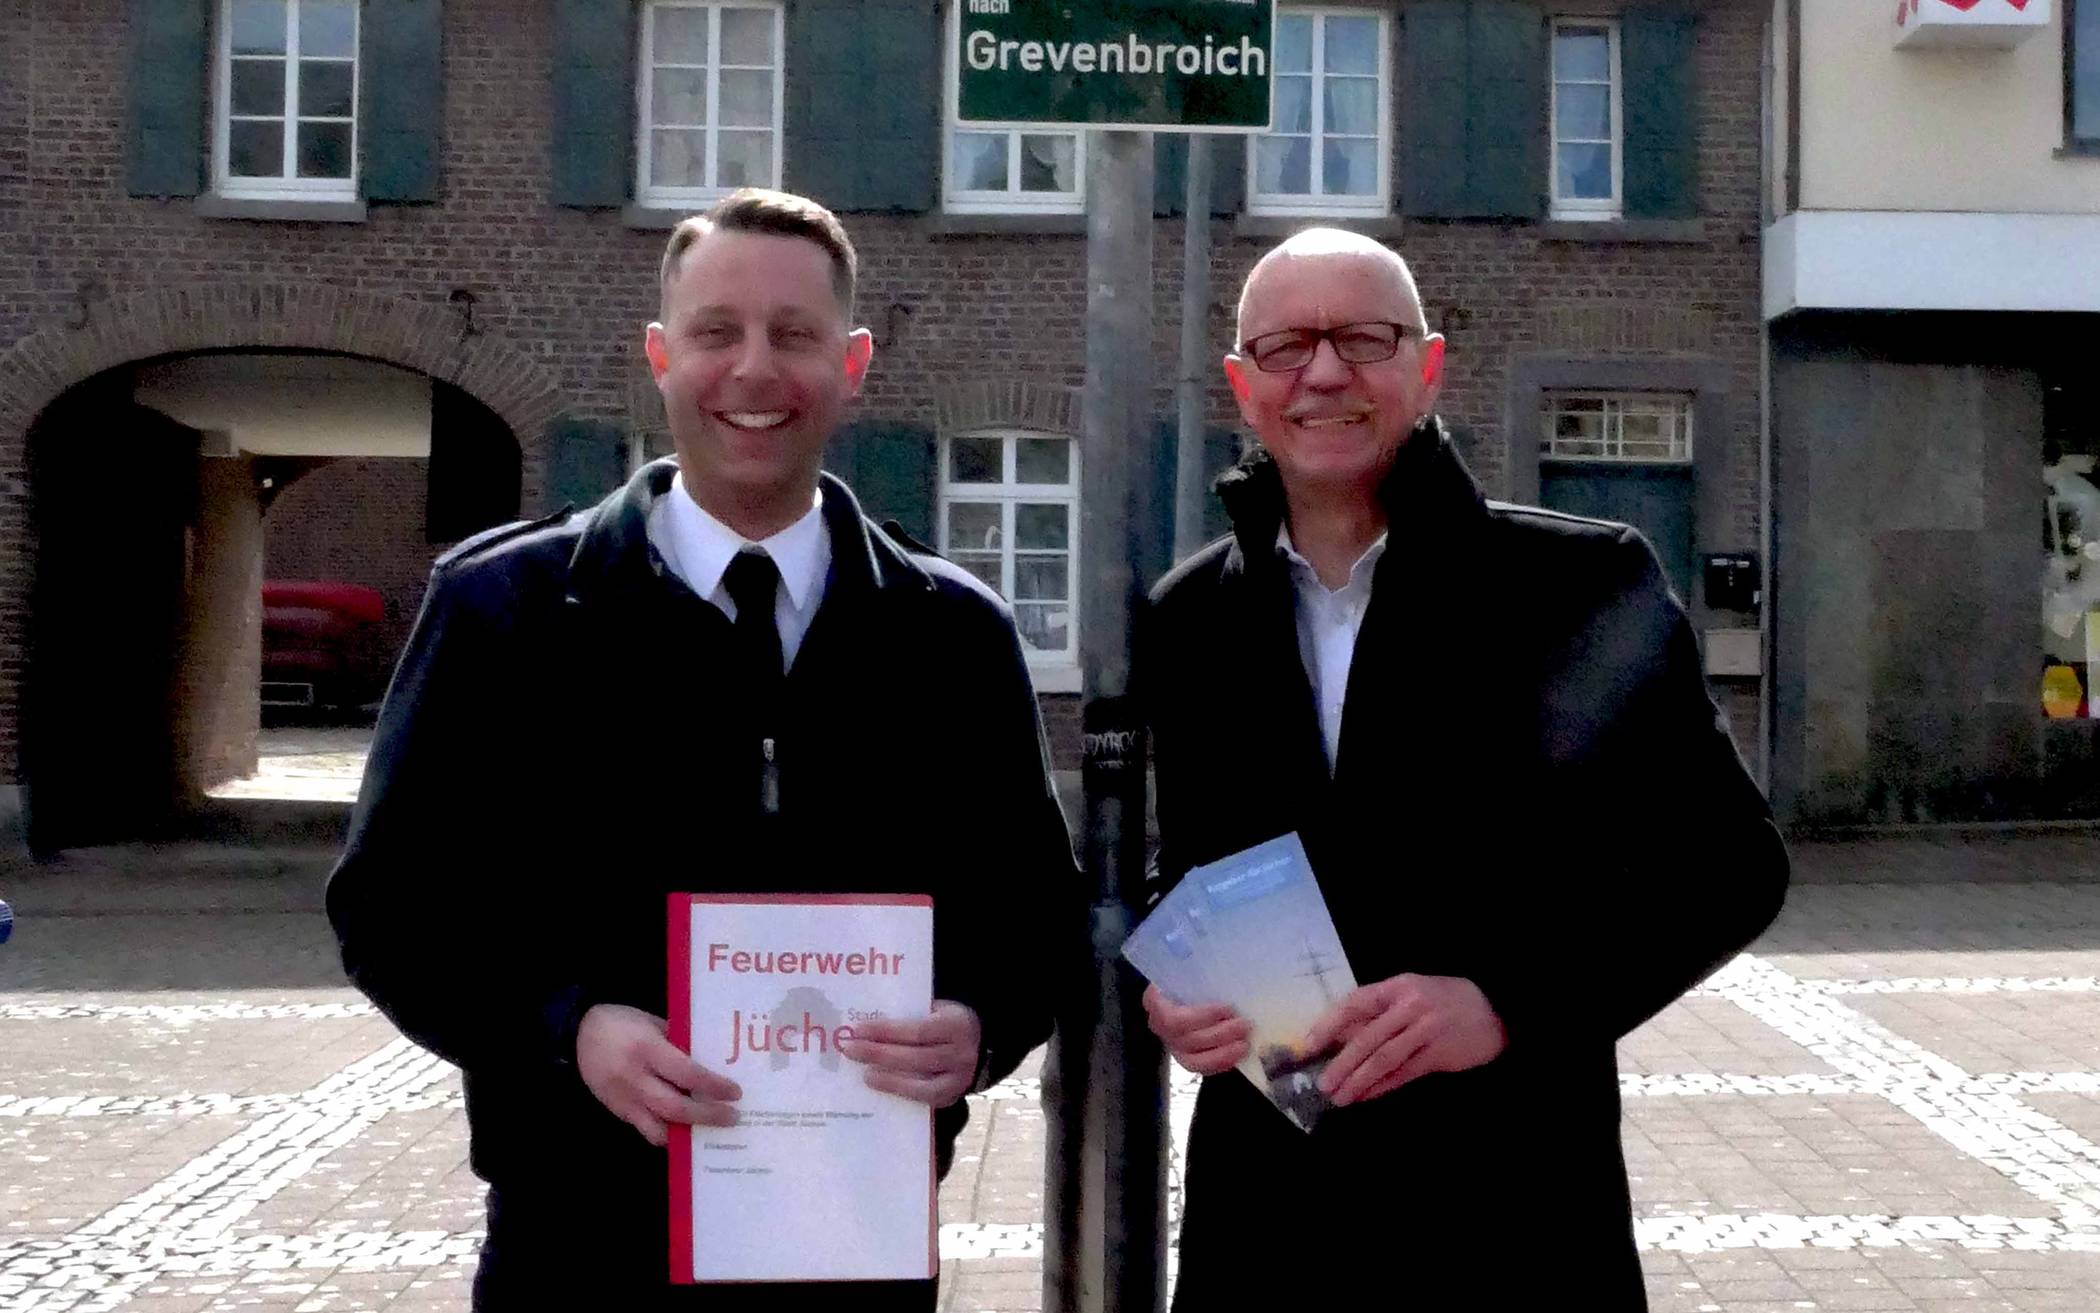  Von links: Heinz-Dieter Abels, Stadtbrandinspektor und Leiter der Feuerwehr Jüchen, mit Bürgermeister Harald Zillikens am Notfall-Infopunkt am Markt in Jüchen. Foto: Stadt Jüchen  